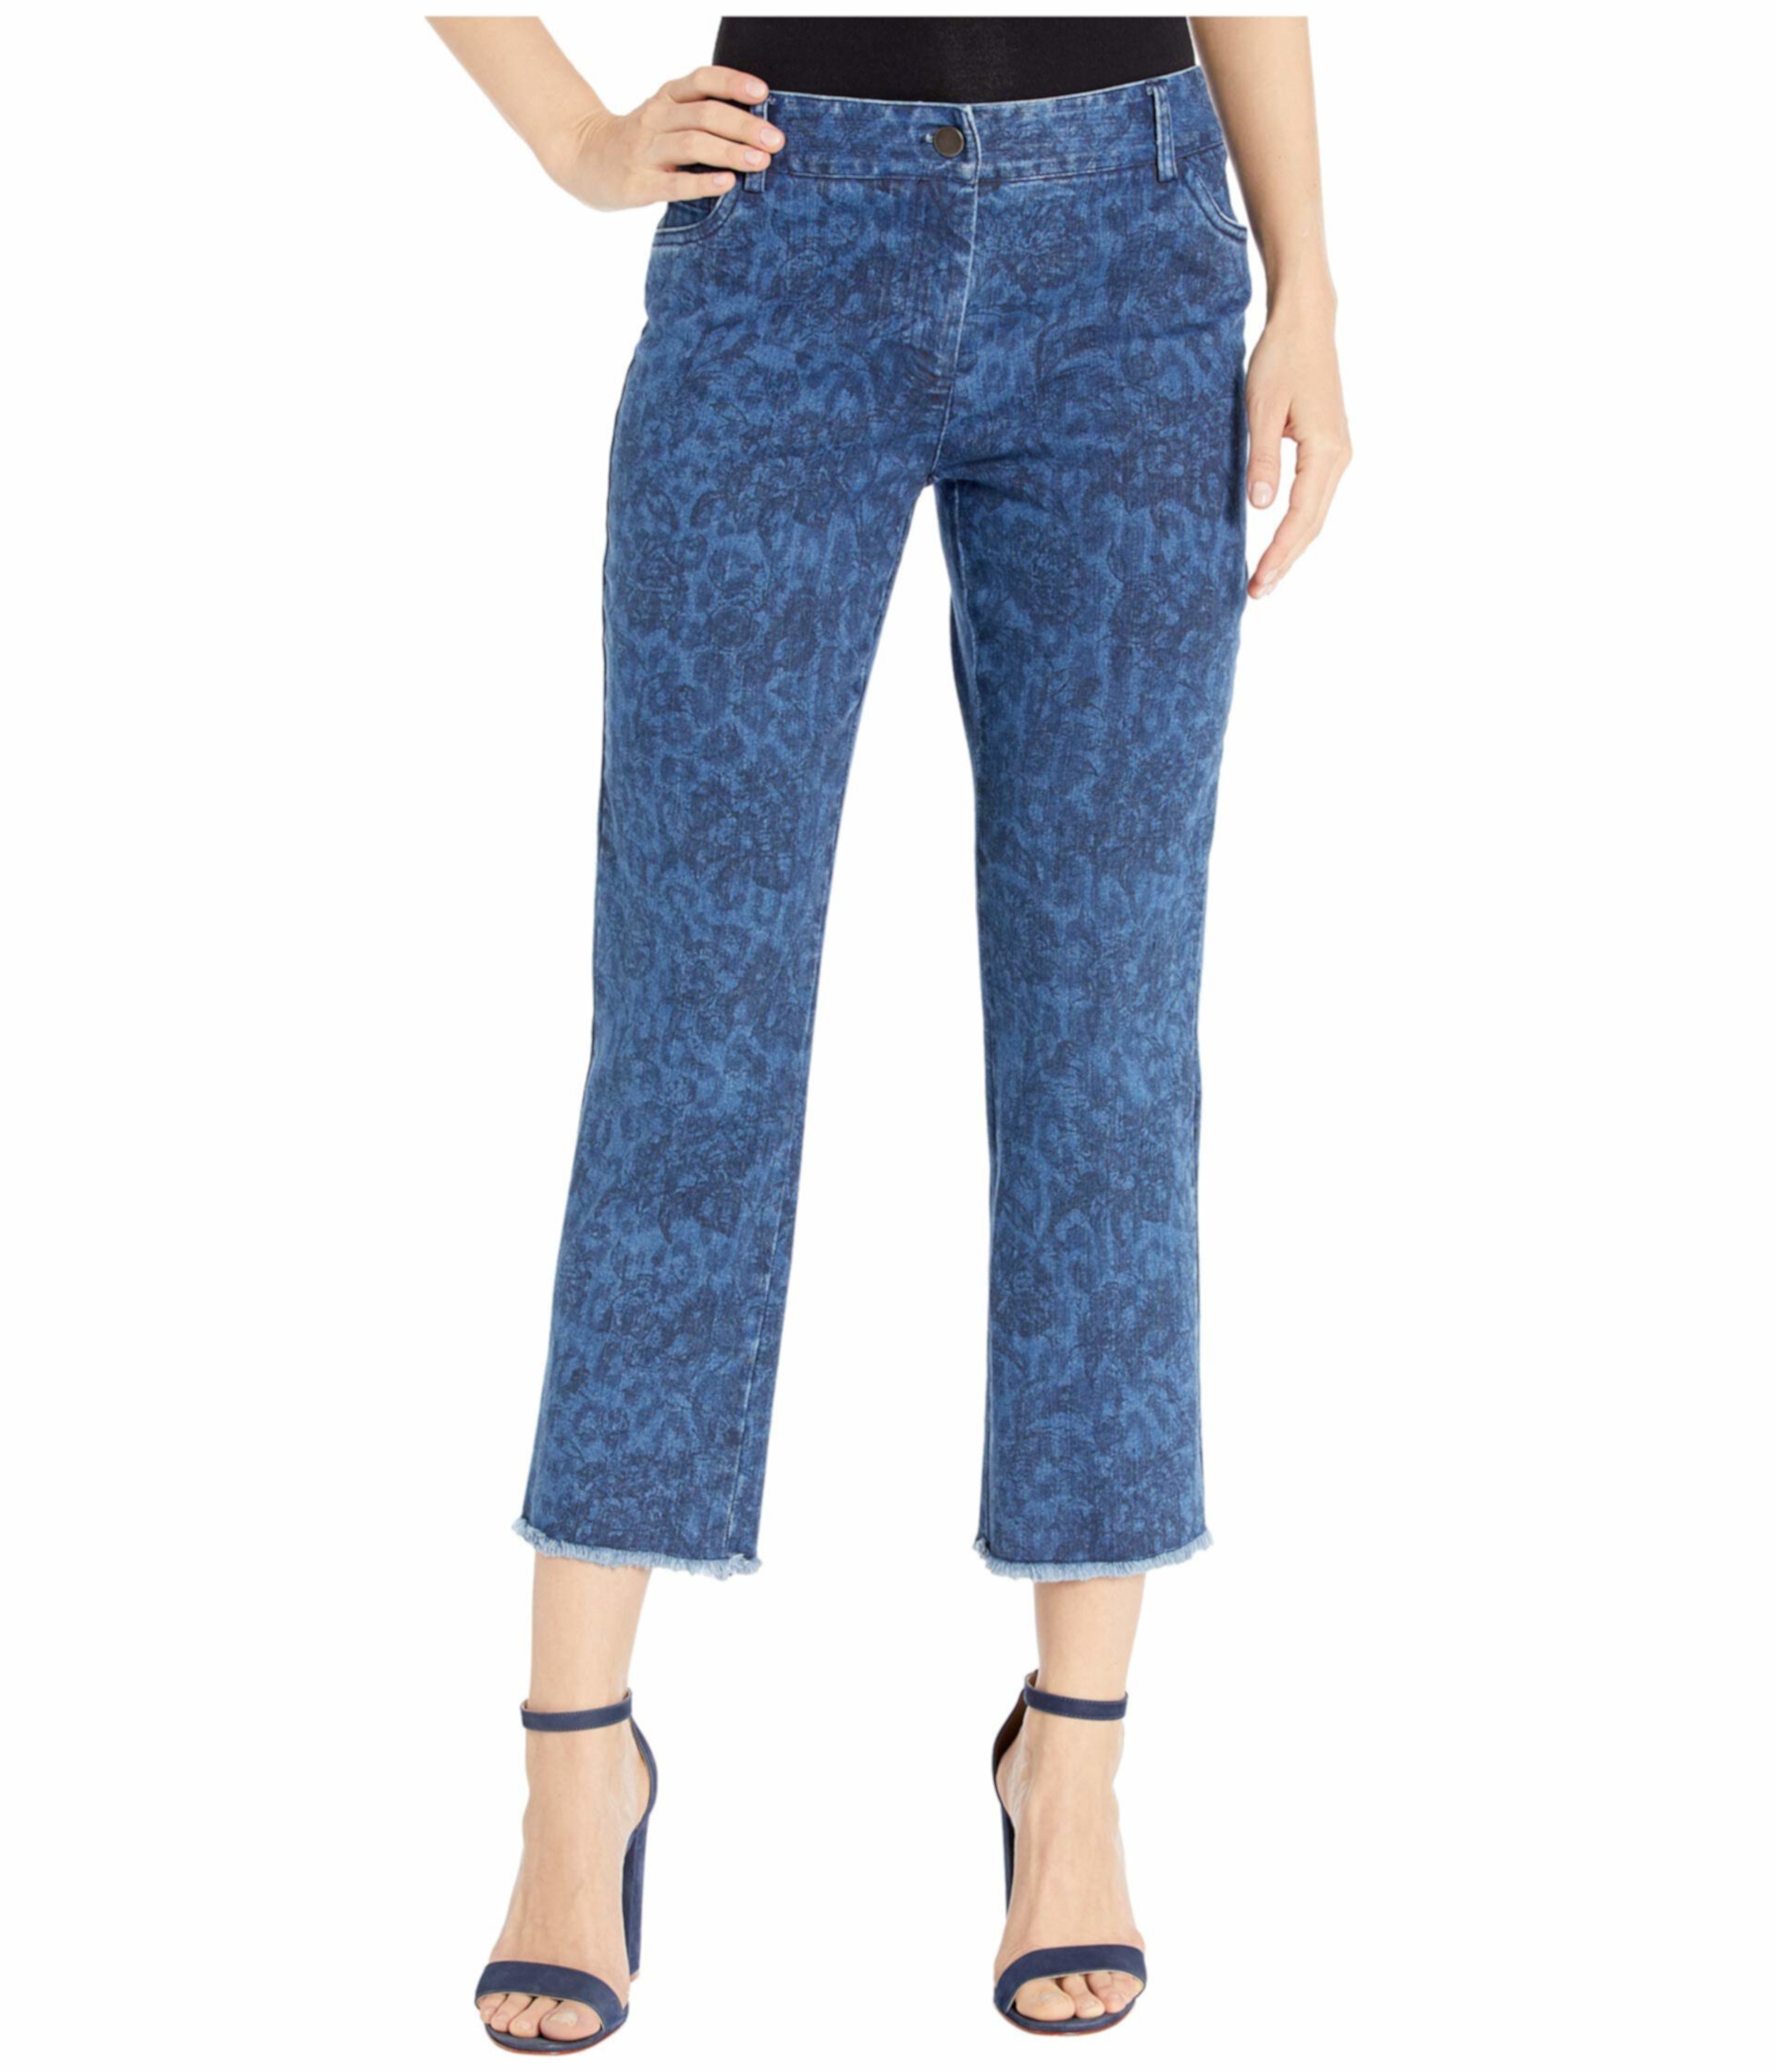 Джинсовые джинсы с пятью карманами с принтом и потрепанным подолом синего цвета Elliott Lauren